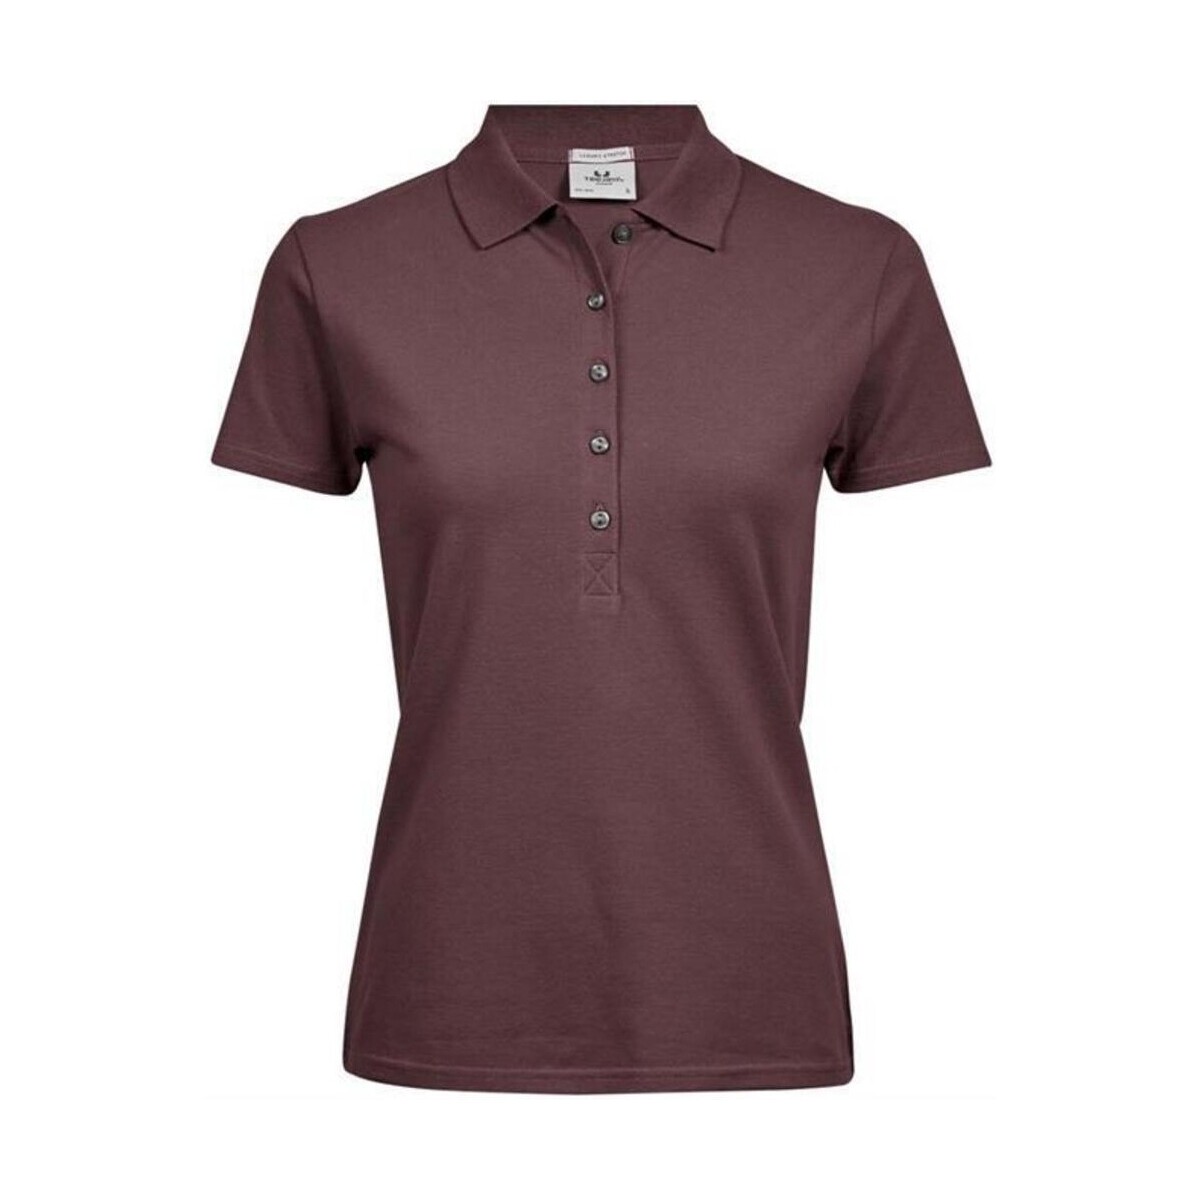 Vêtements Femme T-shirts & Polos Tee Jays Luxury Violet